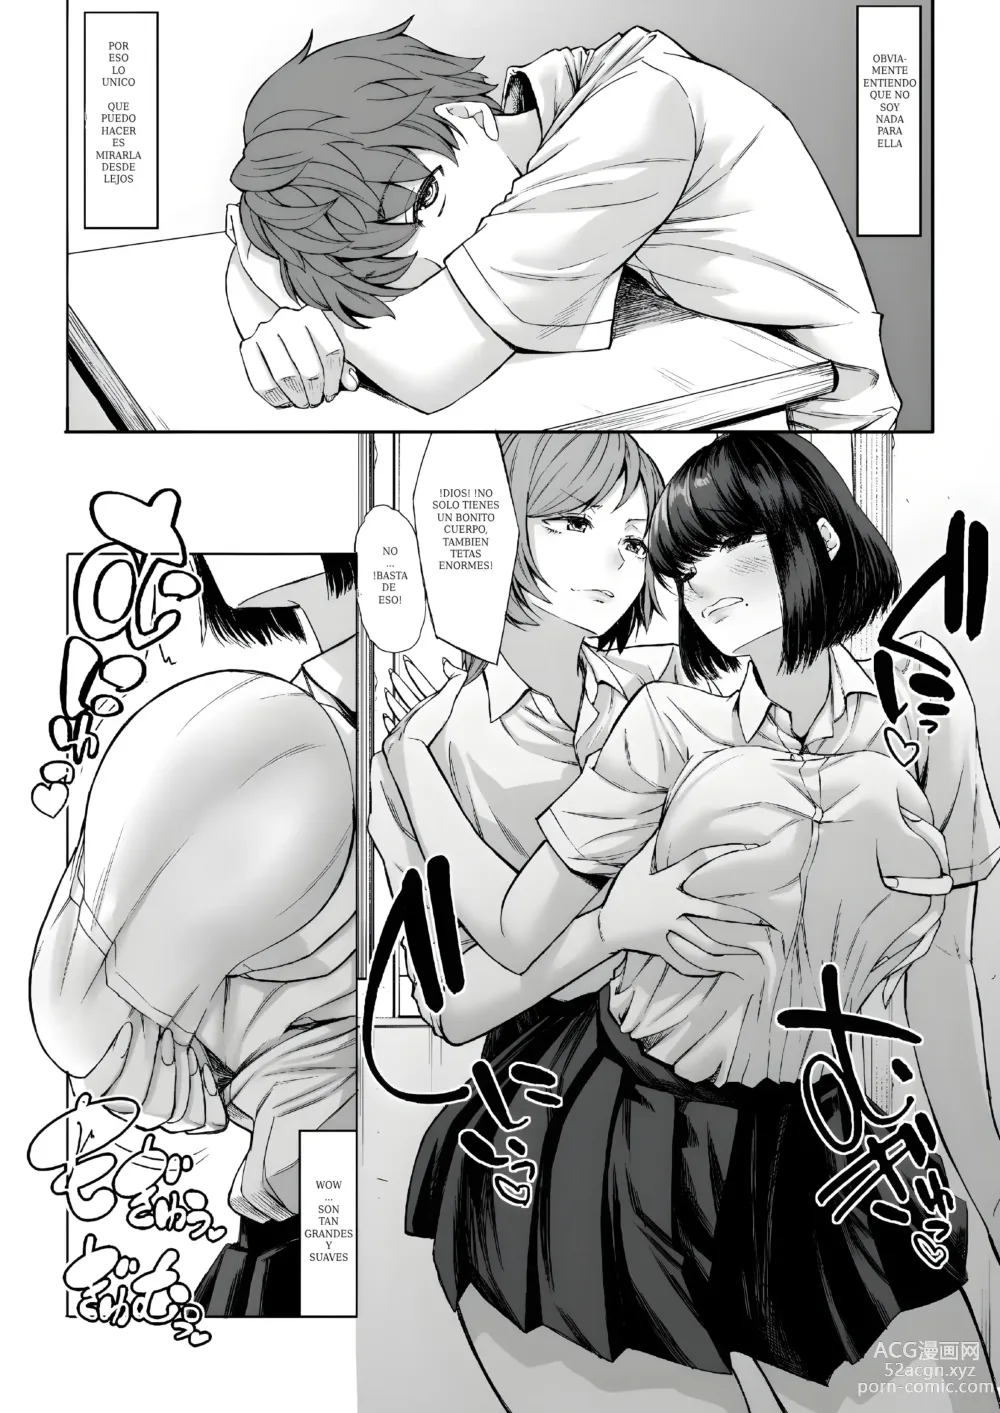 Page 5 of doujinshi Mi virginidad fue robada mientras dormia